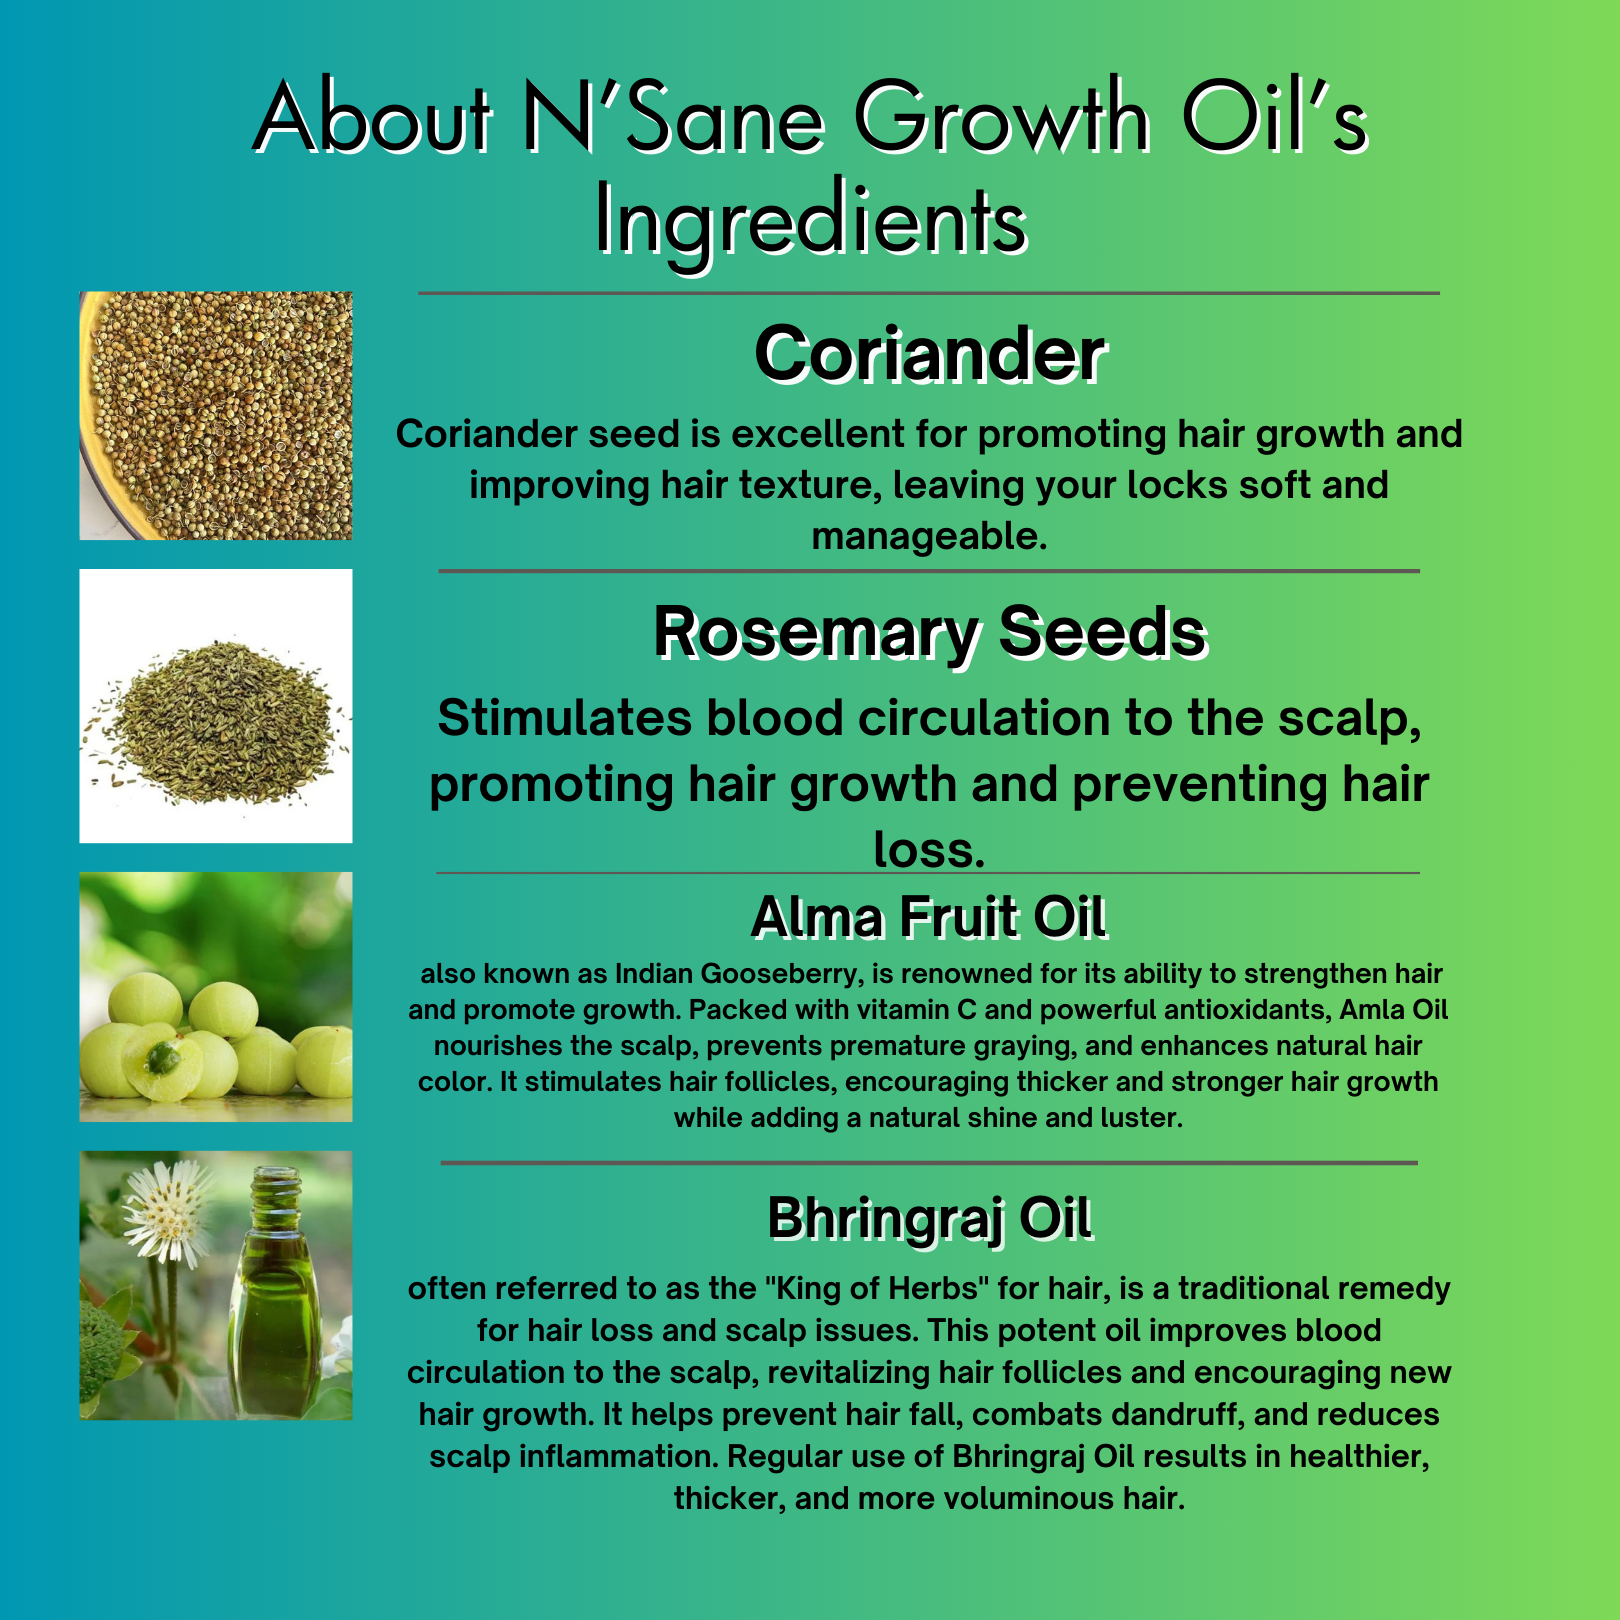 Herb N'fused N'sane Growth Oil